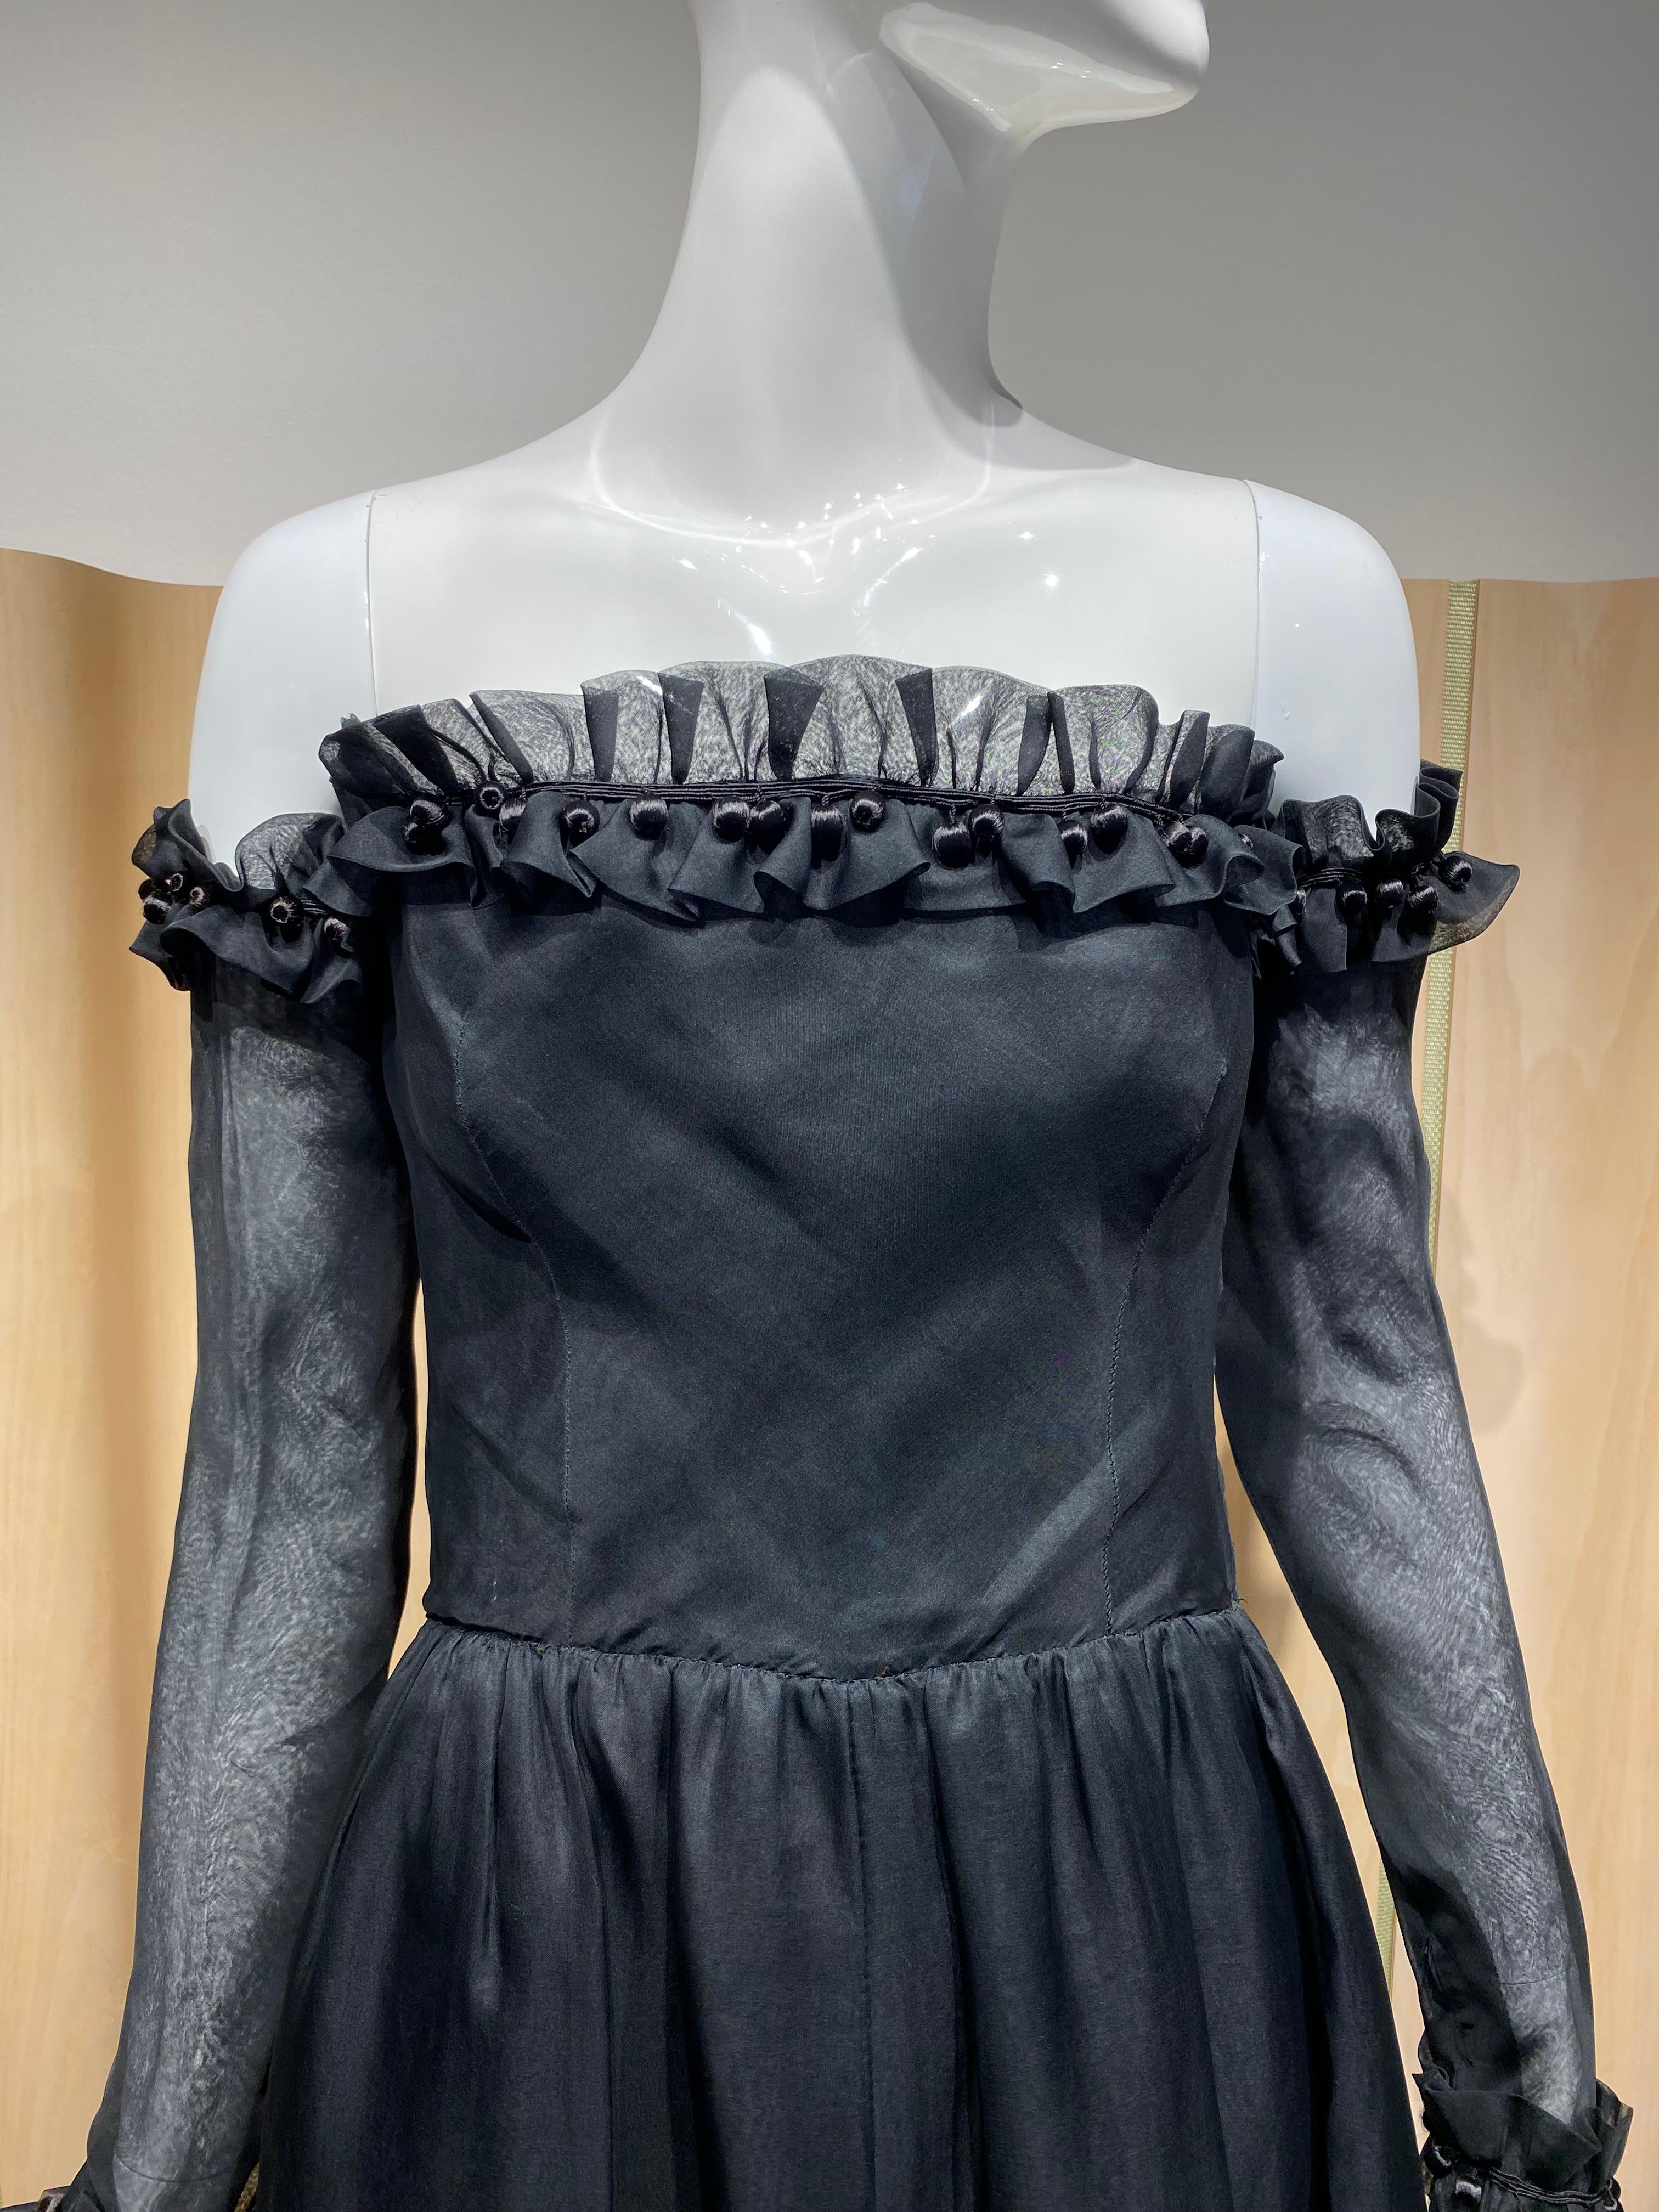 1970 Givenchy by Hubert de givenchy robe bustier en organza de soie noire à volants et manches détachables. ( voir (publicité des années 1970 )
Taille 0/2 
mesure :
Buste 32